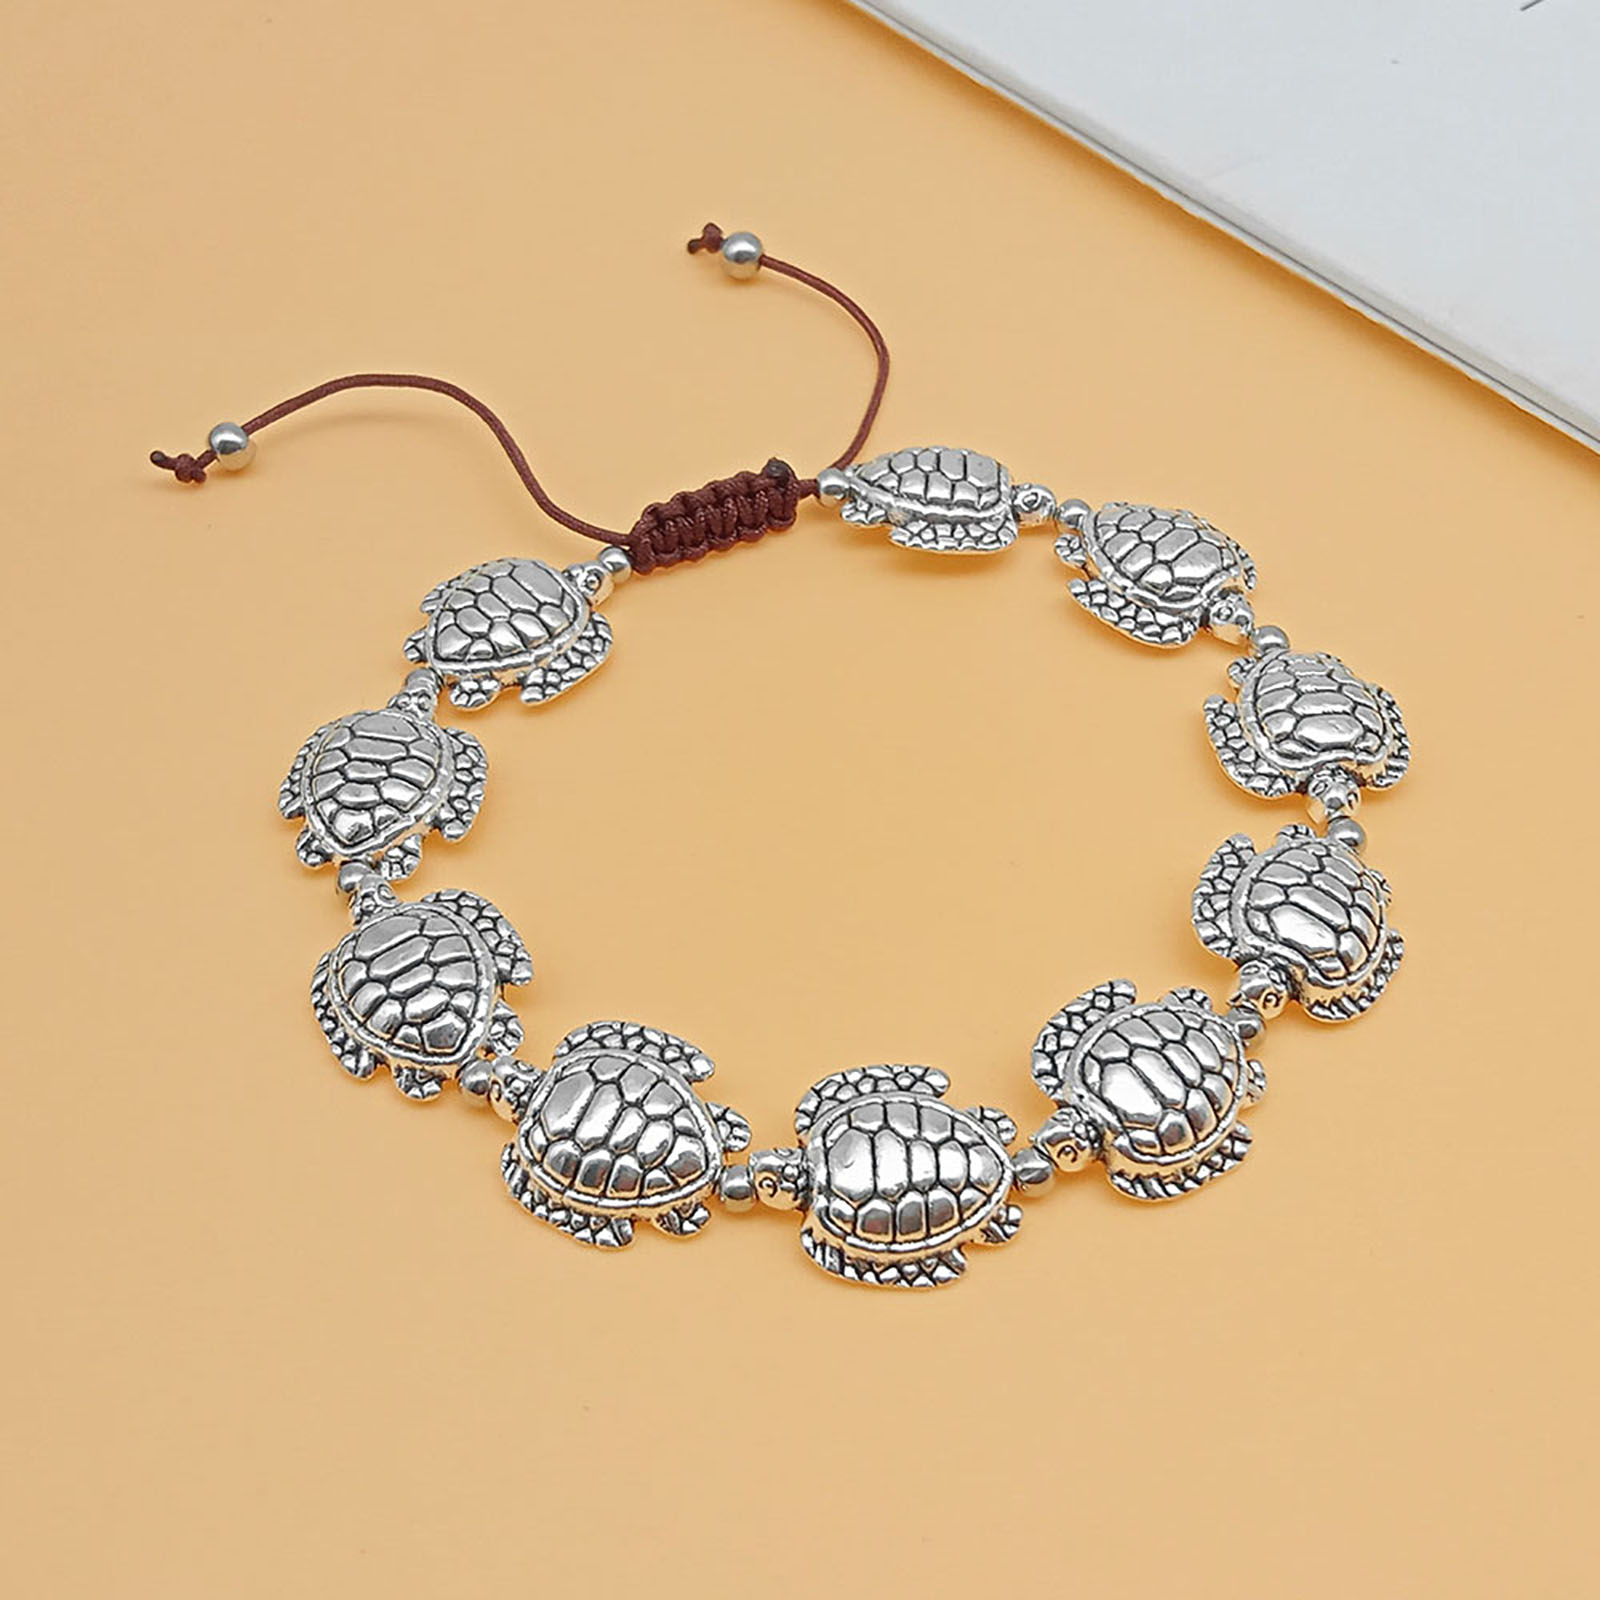 1:Palm rope bracelet Bracelet